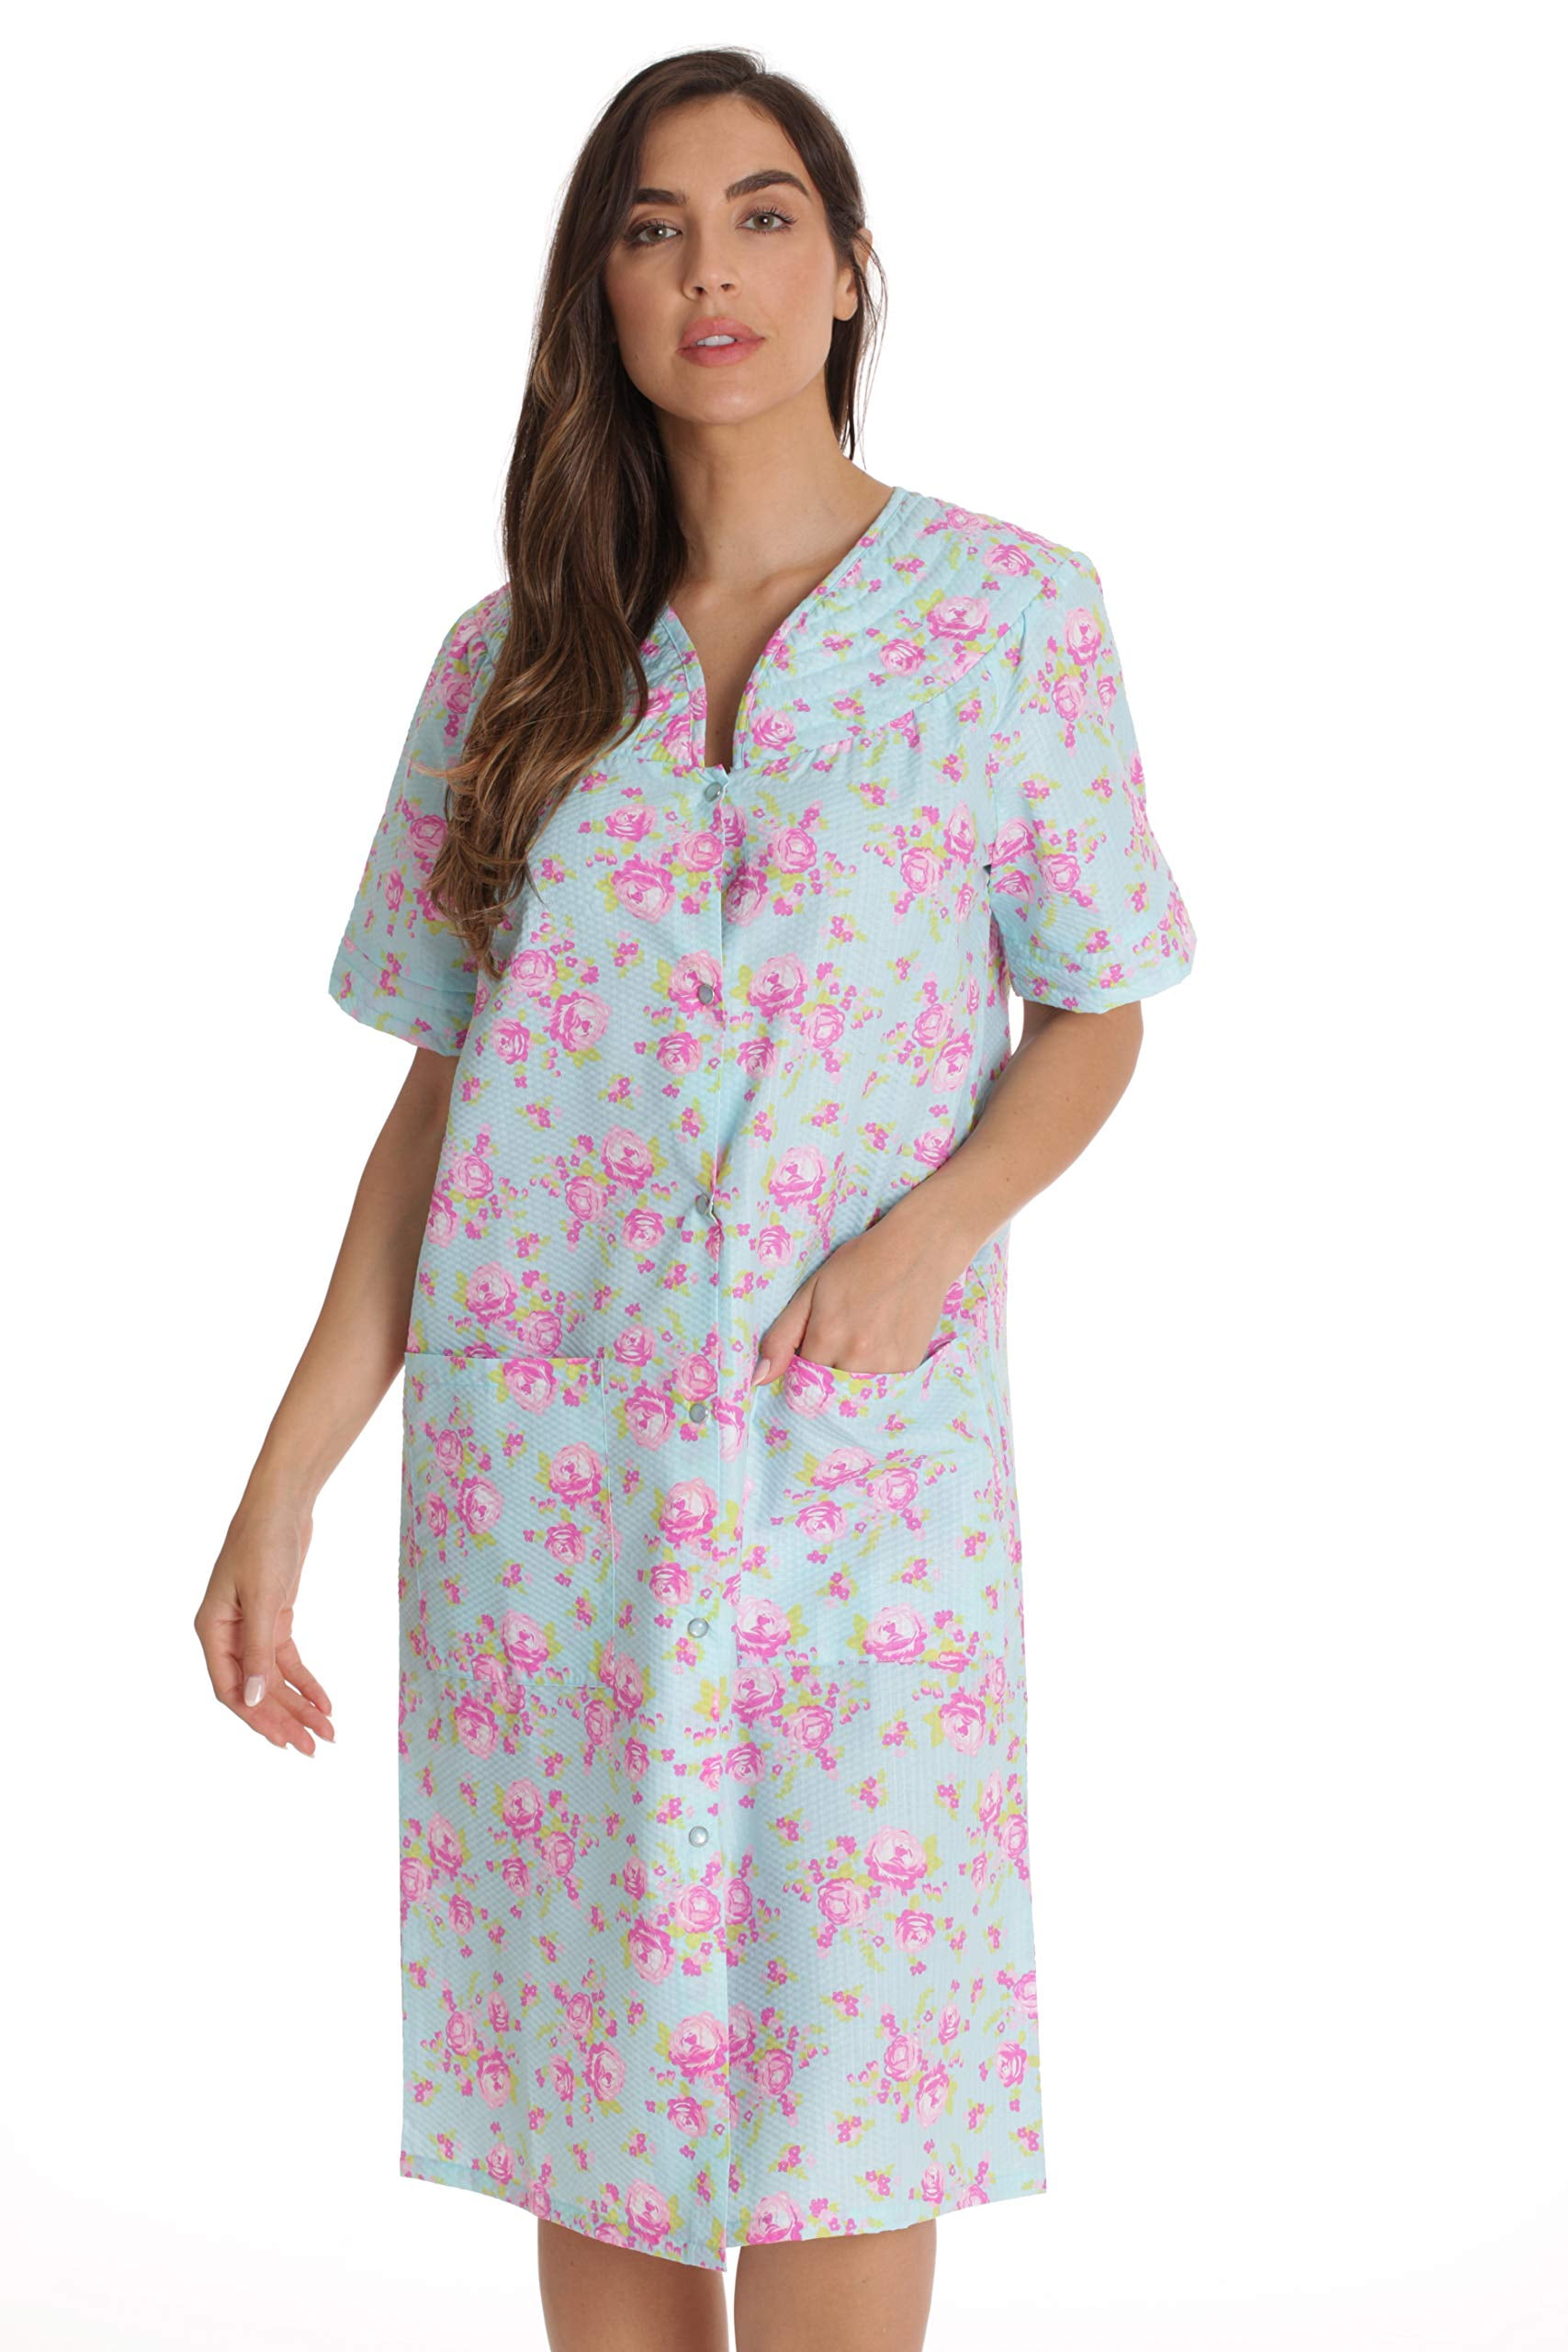 Dreamcrest Short Sleeve Seersucker Duster Housecoat Women Sleepwear ...